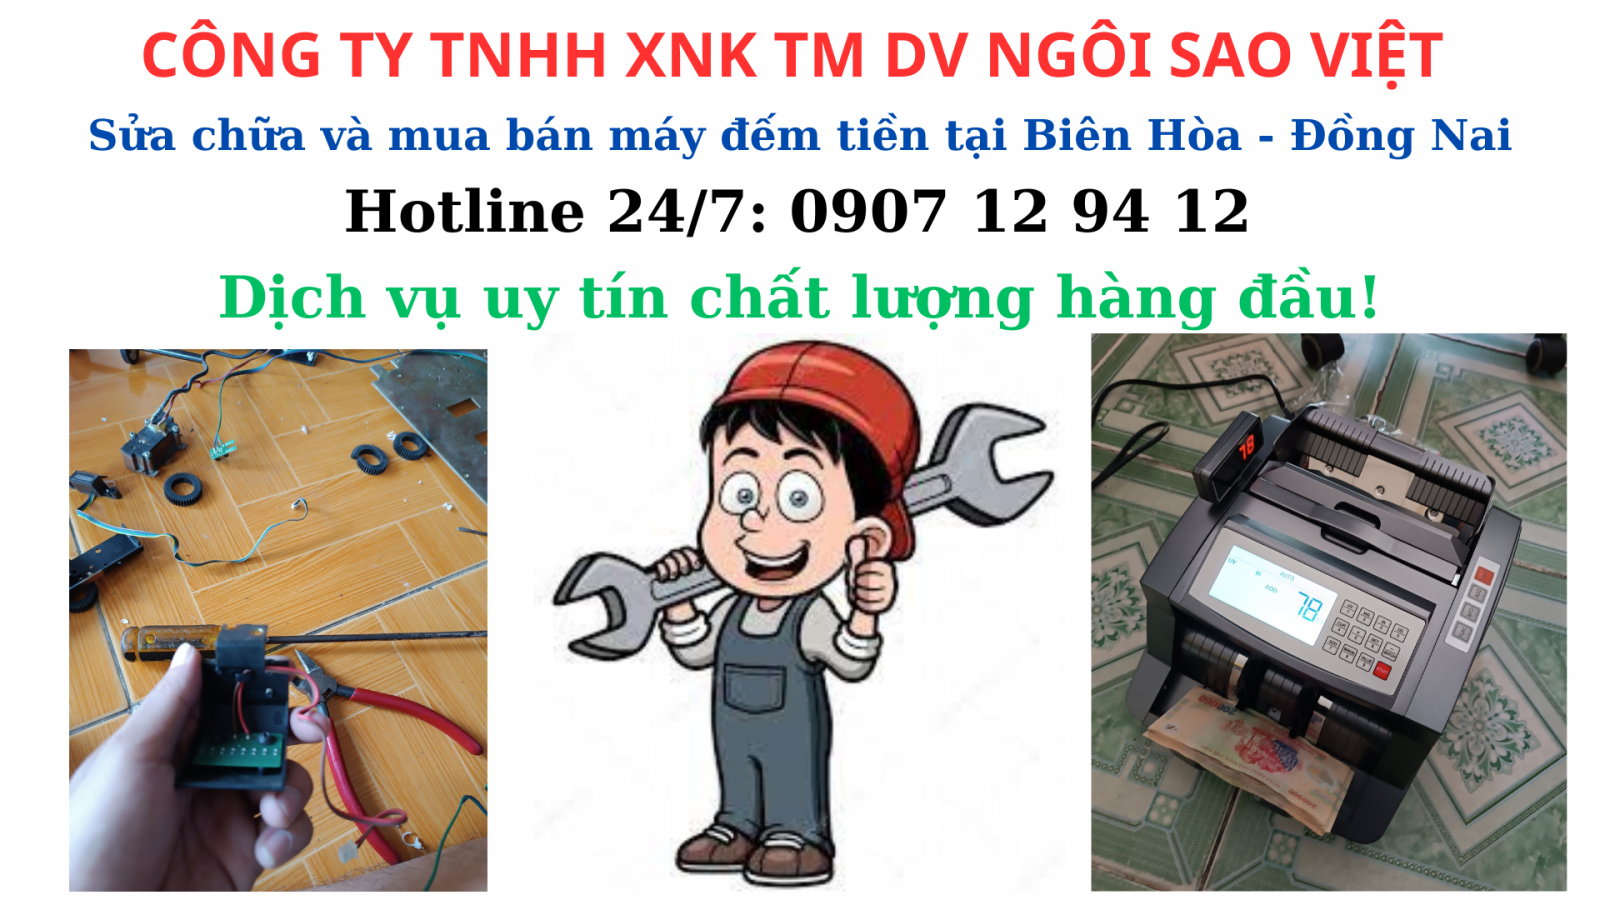 Sửa chửa và mua bán máy đếm tiền tại Biên Hòa - Đồng Nai